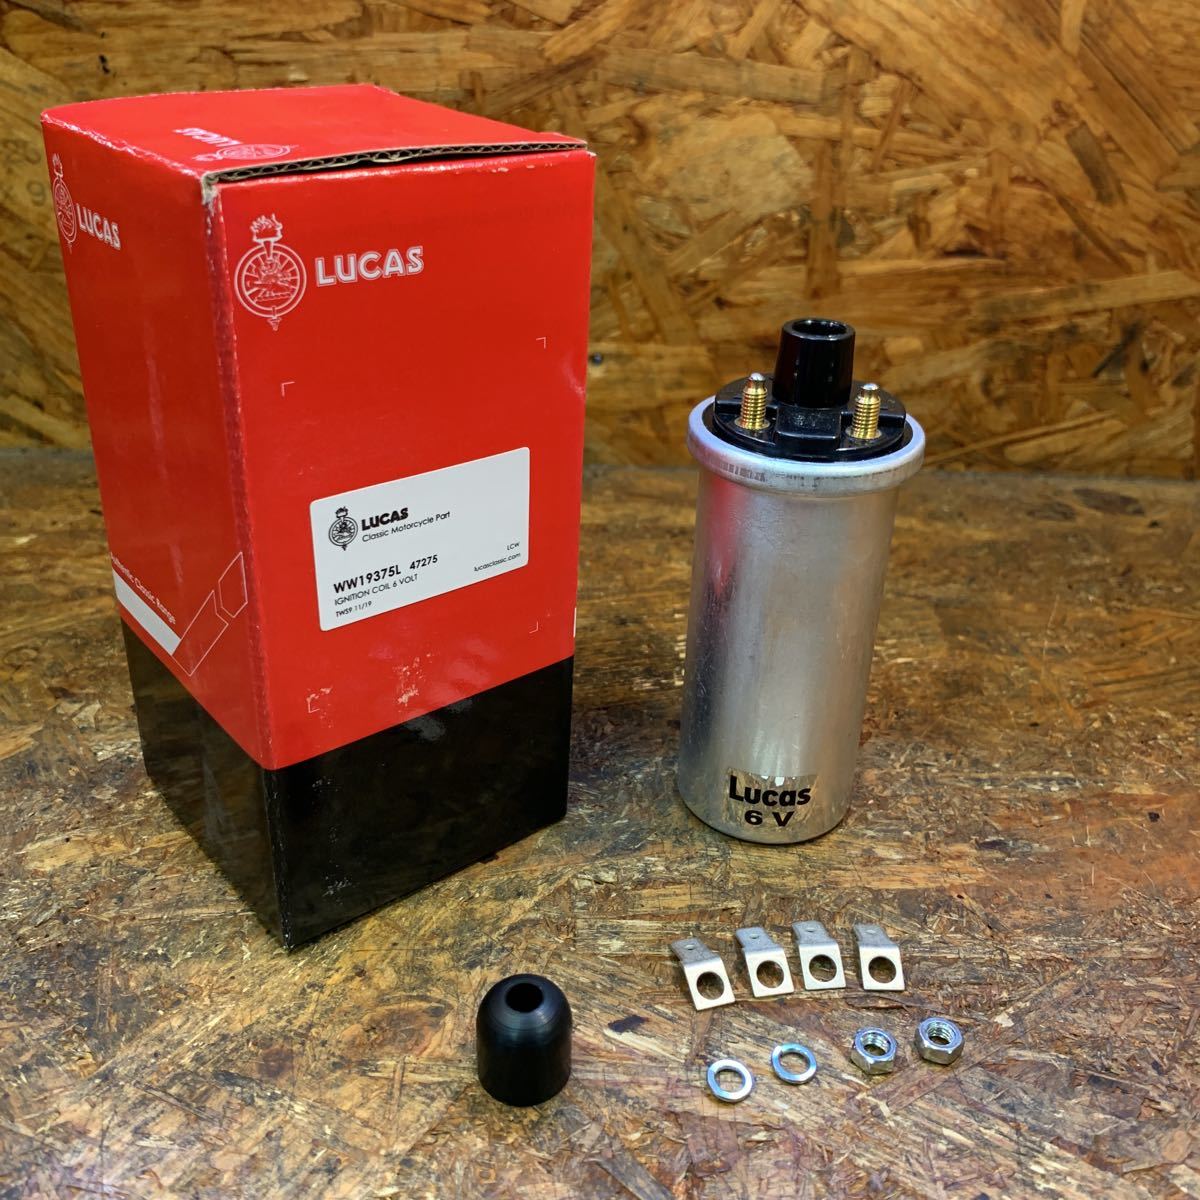  Lucas original ignition coil 6 bolt Triumph TR6 T120 T100 6T ignition (WW19375L)